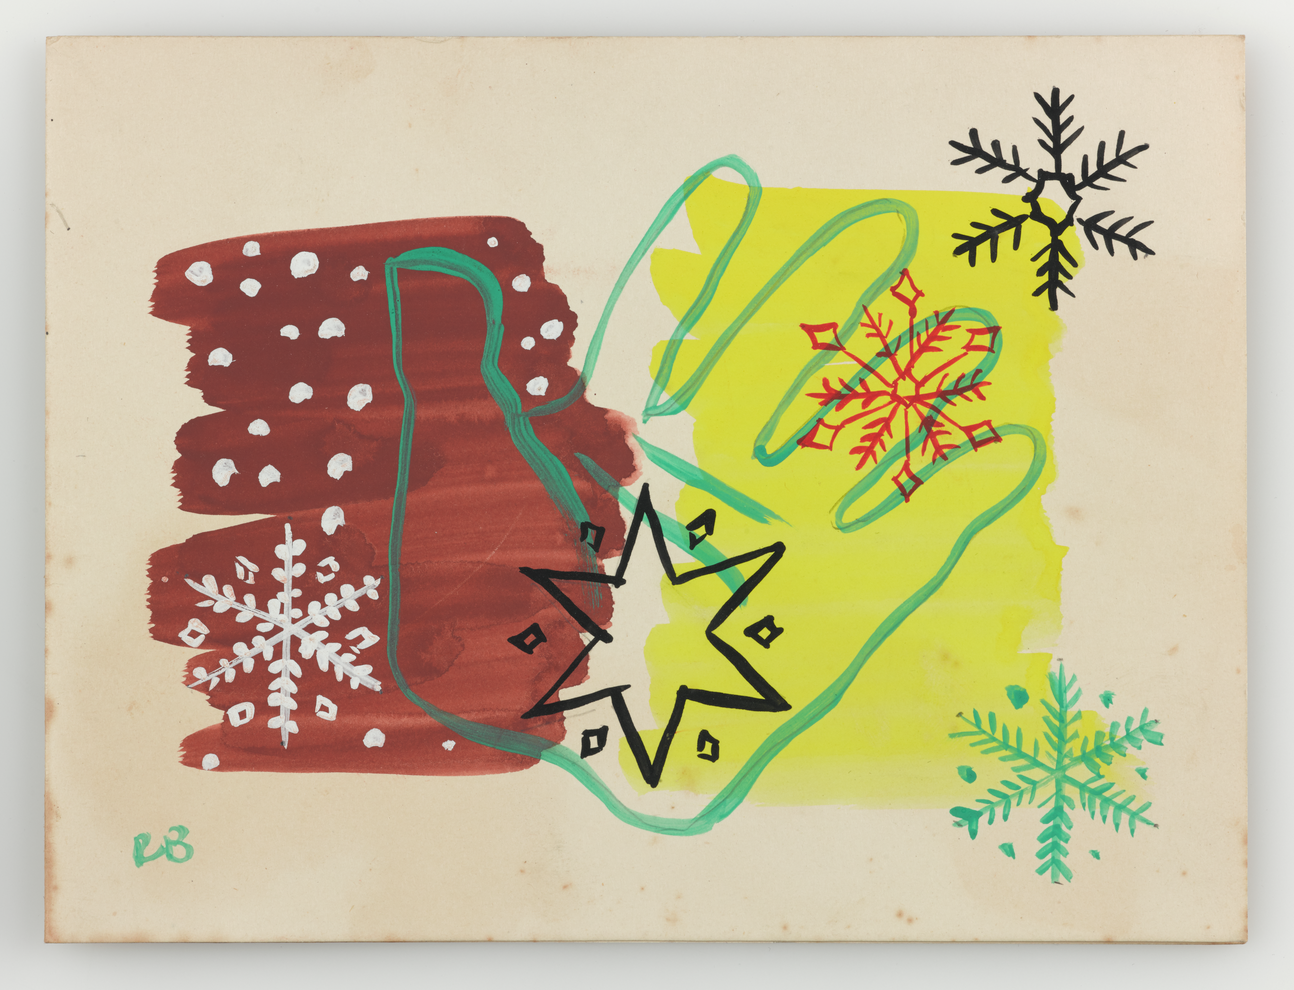 Bronowski Christmas card for 1951